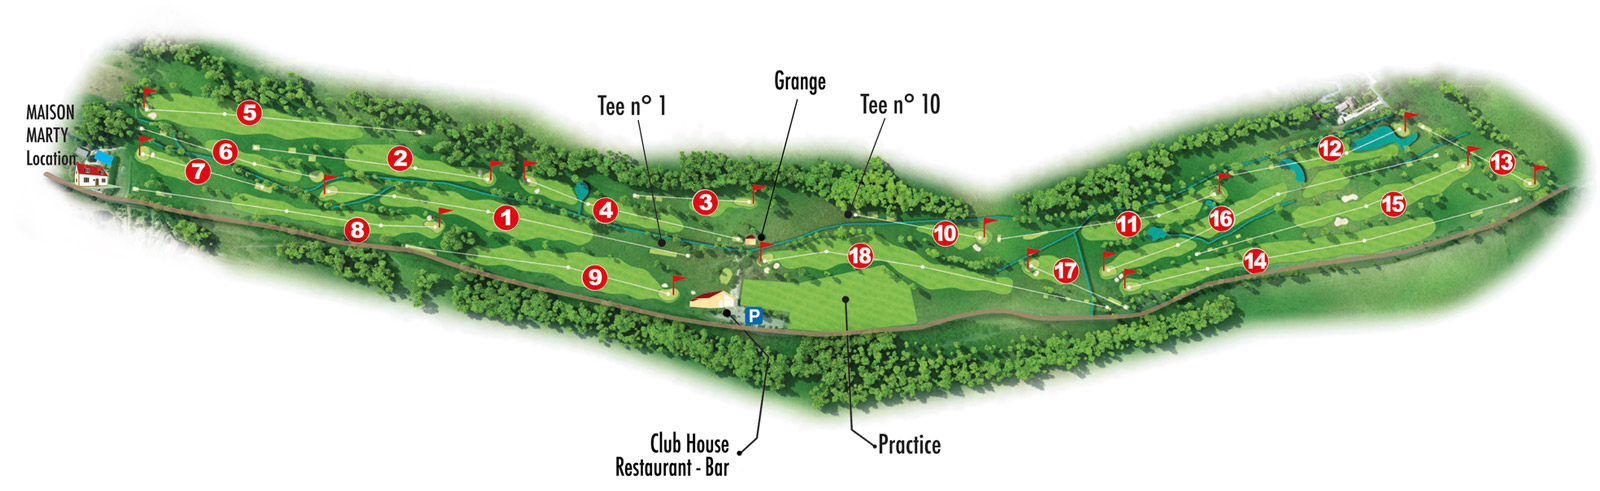 Lolivarie Golf Club - Lolivarie Golf Club, de golfbaan van de professional